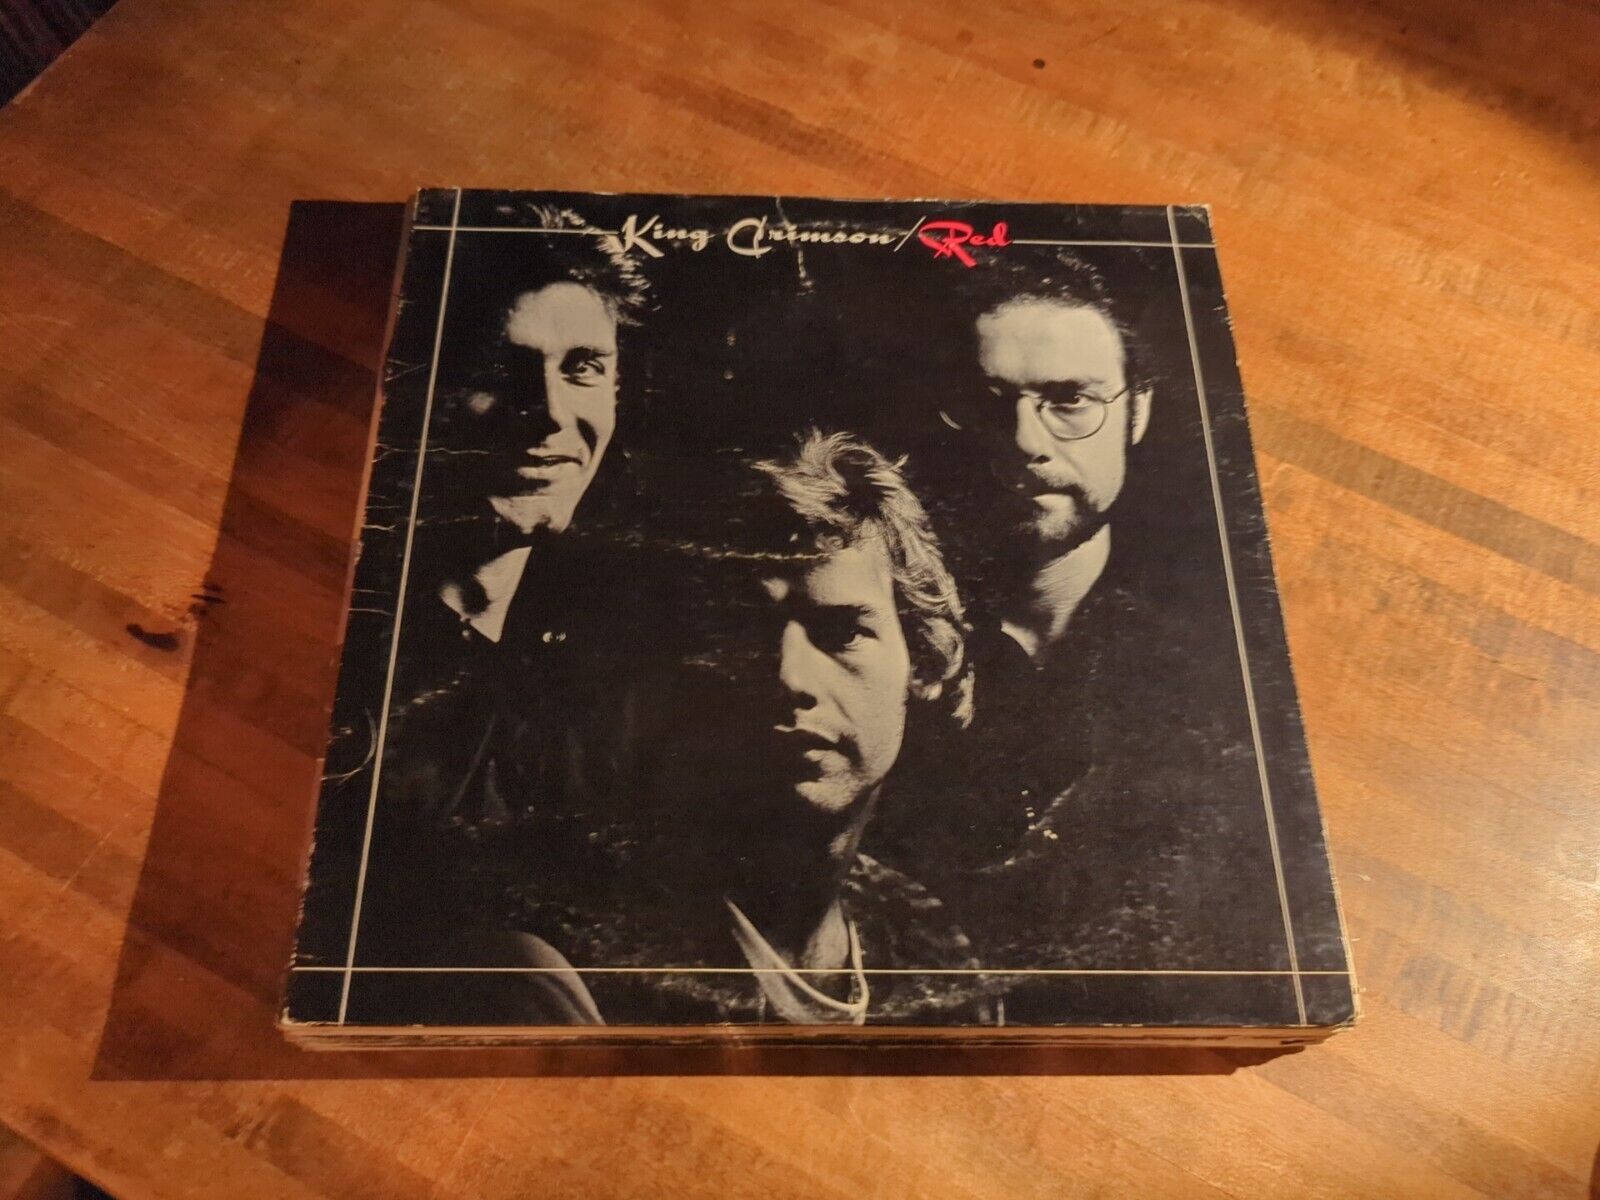 King Crimson – Red Original Pressing Vinyl Record LP Album SD 18110 1974